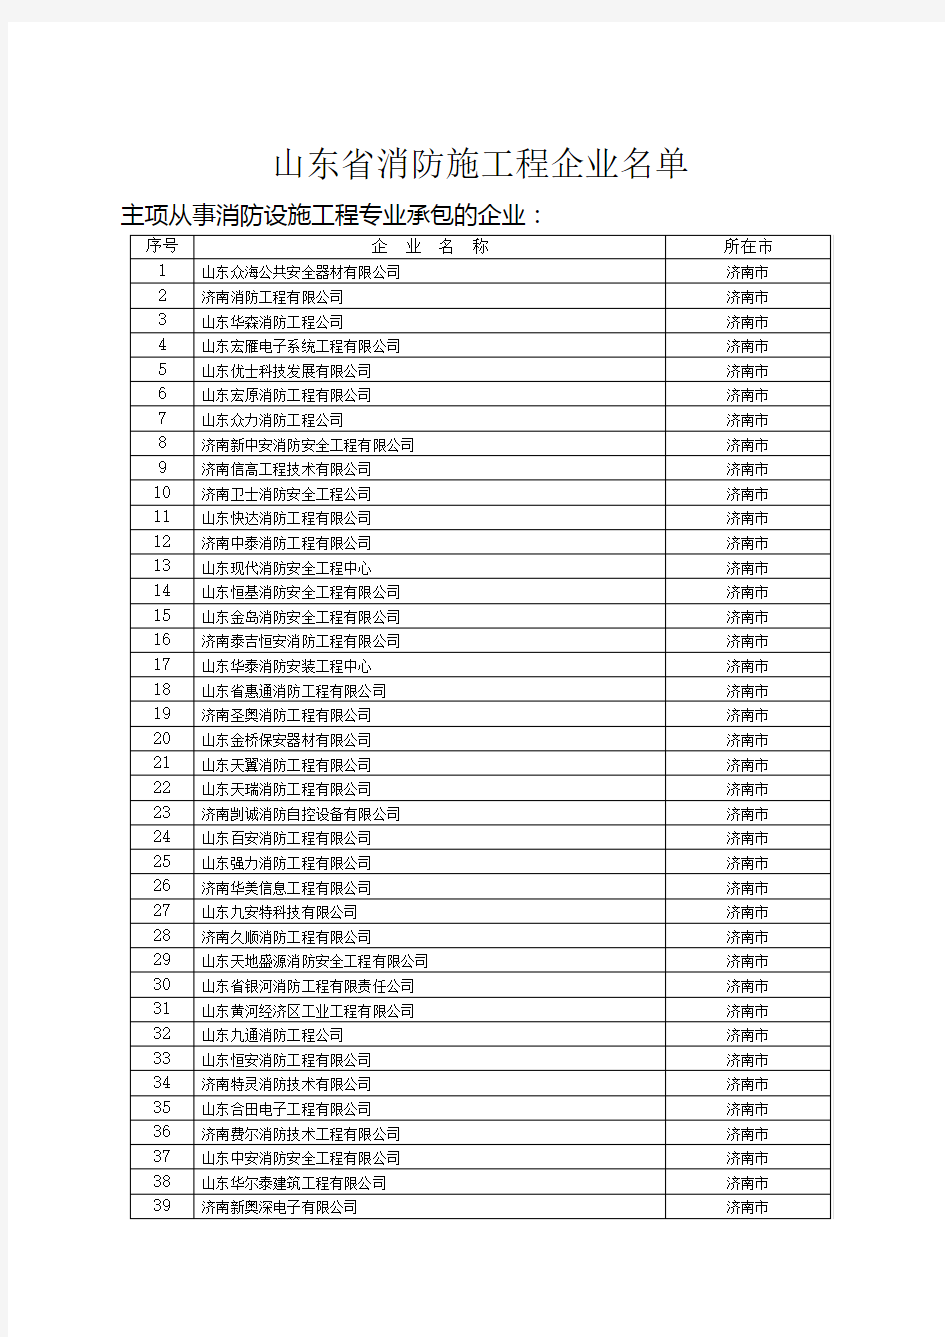 济南市主要消防工程企业名单